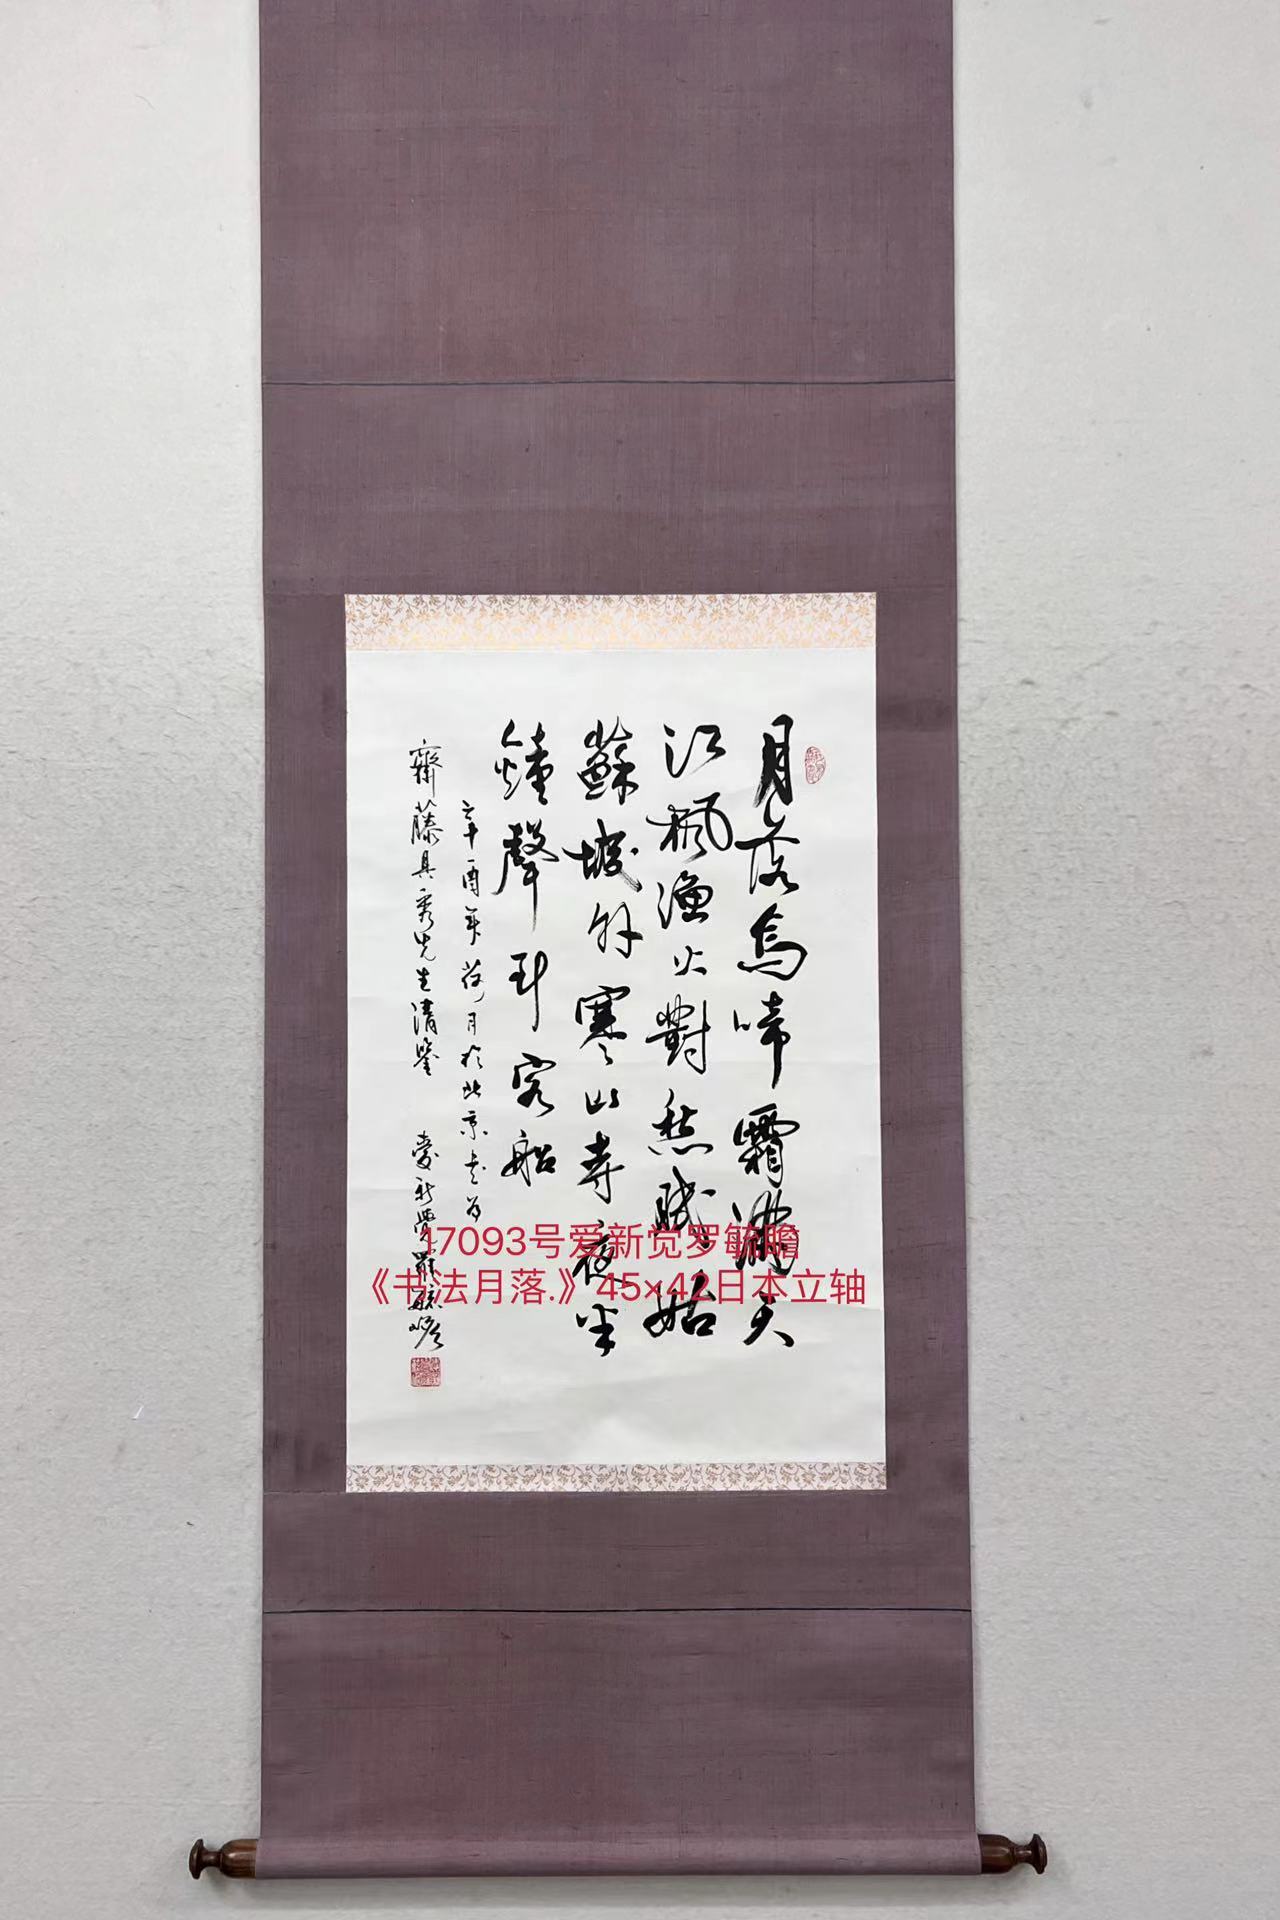 17093号爱新觉罗毓瞻《书法月落.》45×42日本立轴.jpg